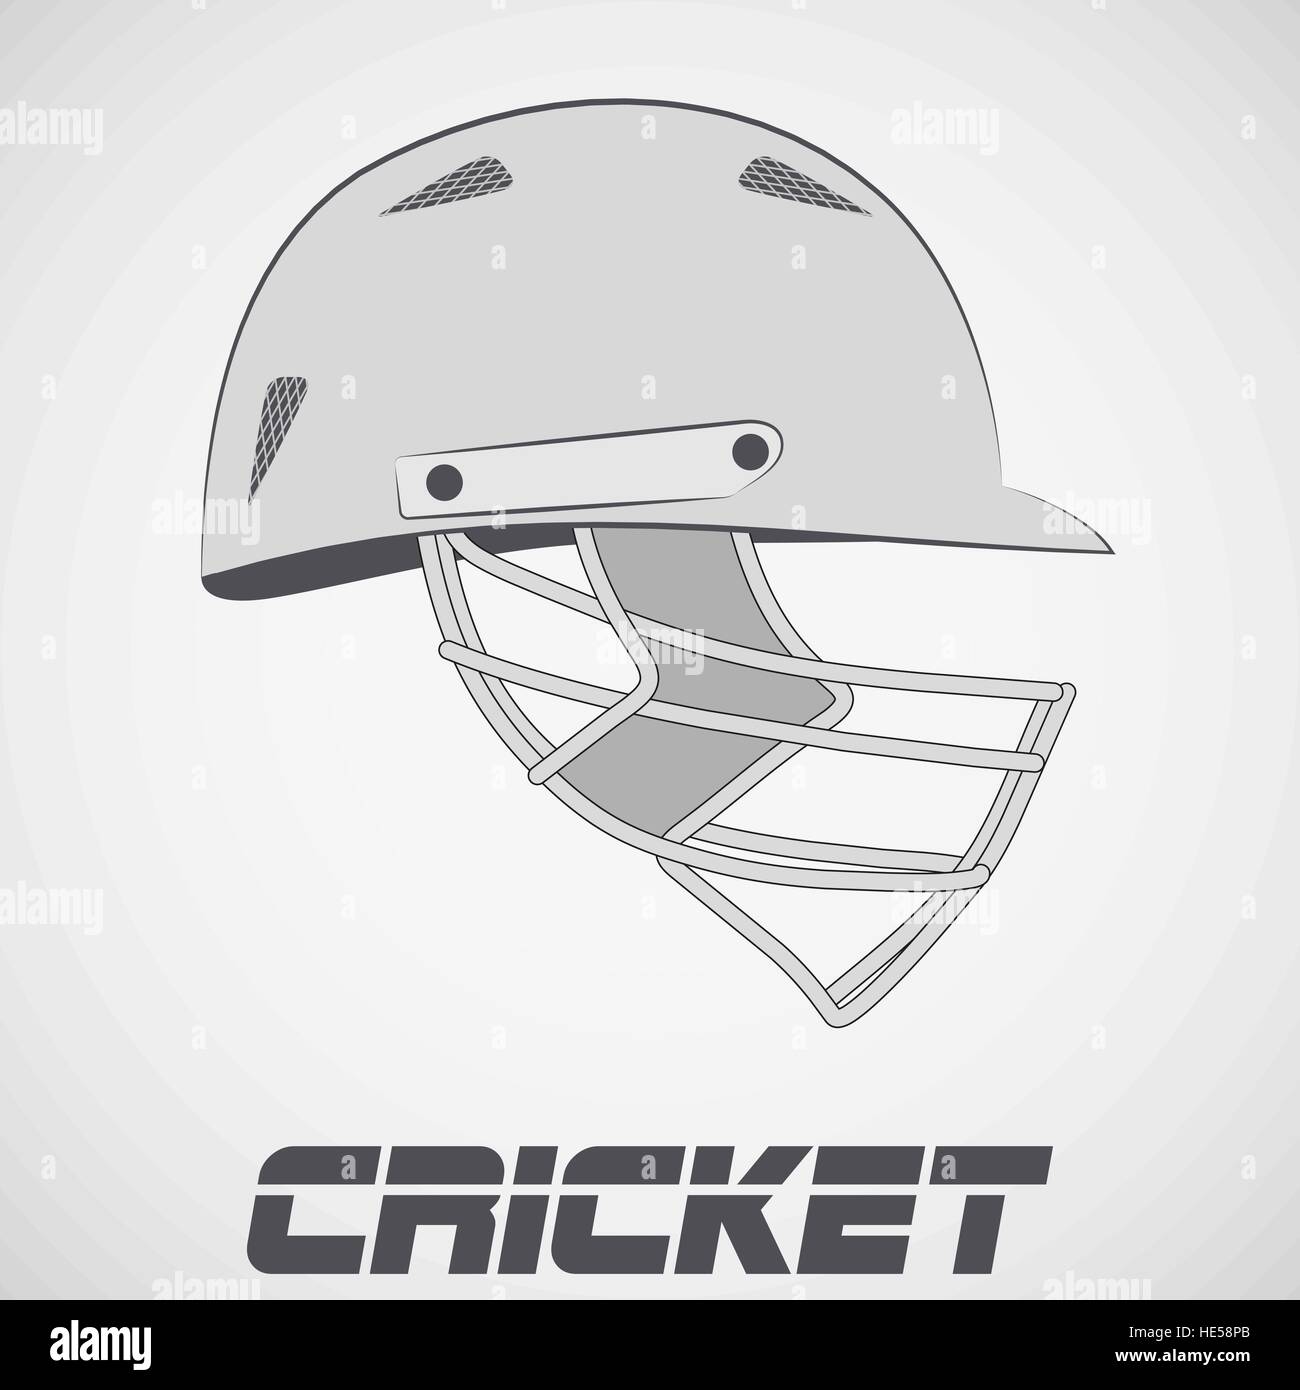 Cricket Helmet sketch Stock Vector